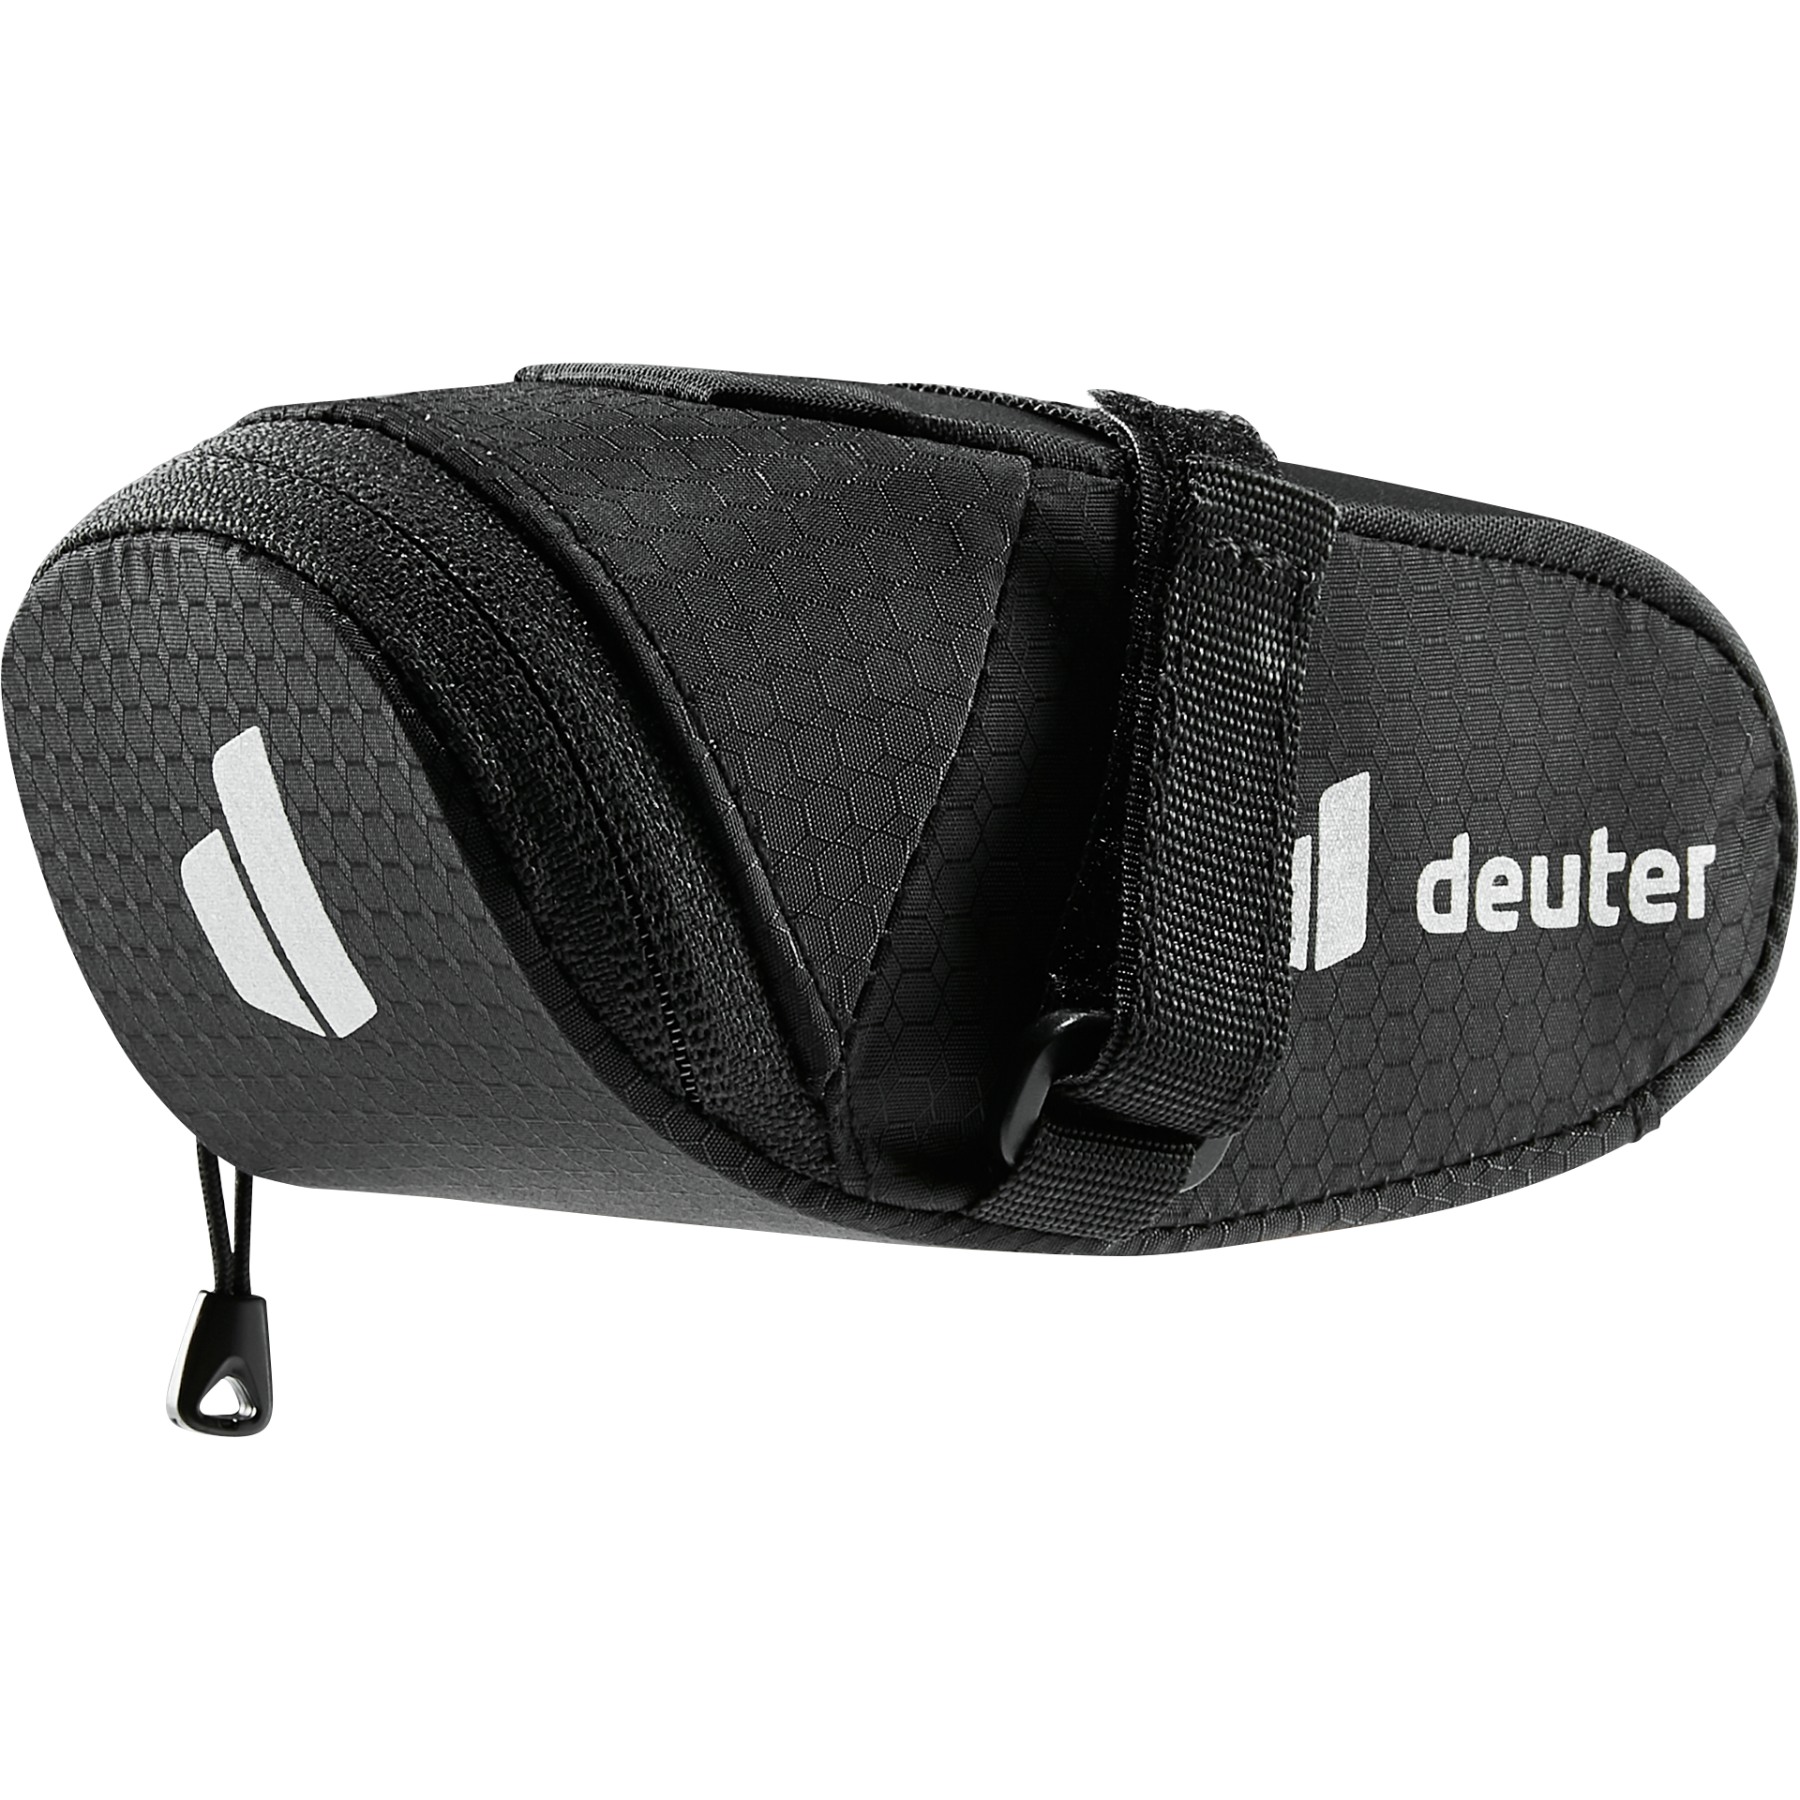 Produktbild von Deuter Bike Bag 0.3L Satteltasche - schwarz